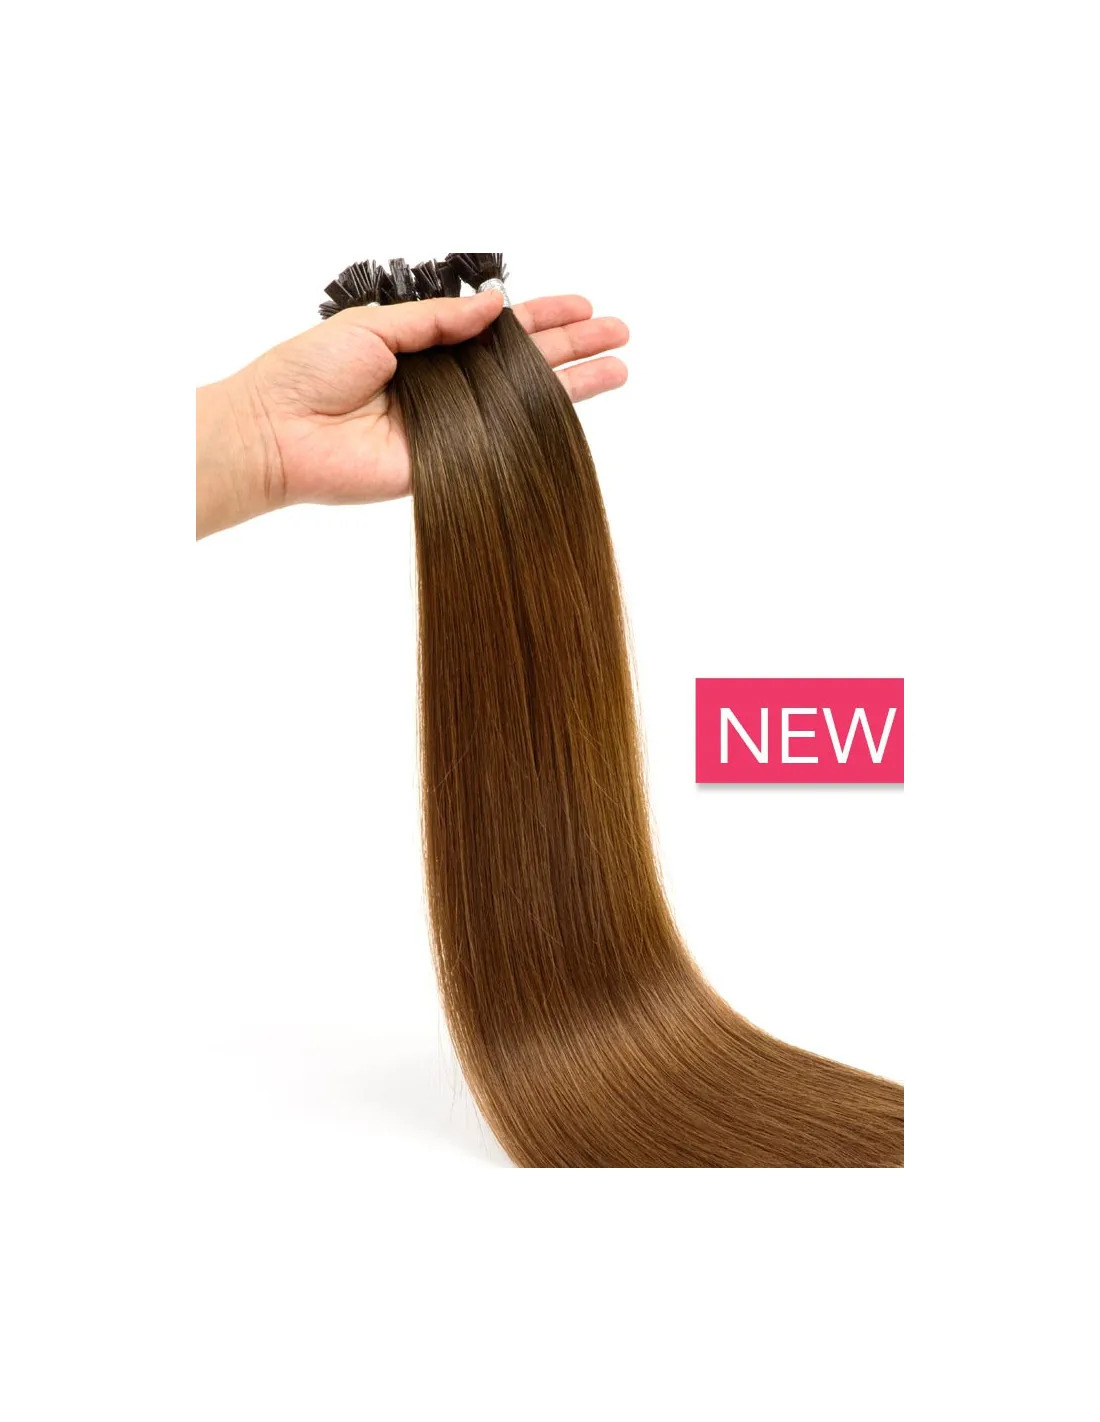 Extensions de cheveux naturels by Extens Hair : de nouvelles teintes tendances pour la rentrée